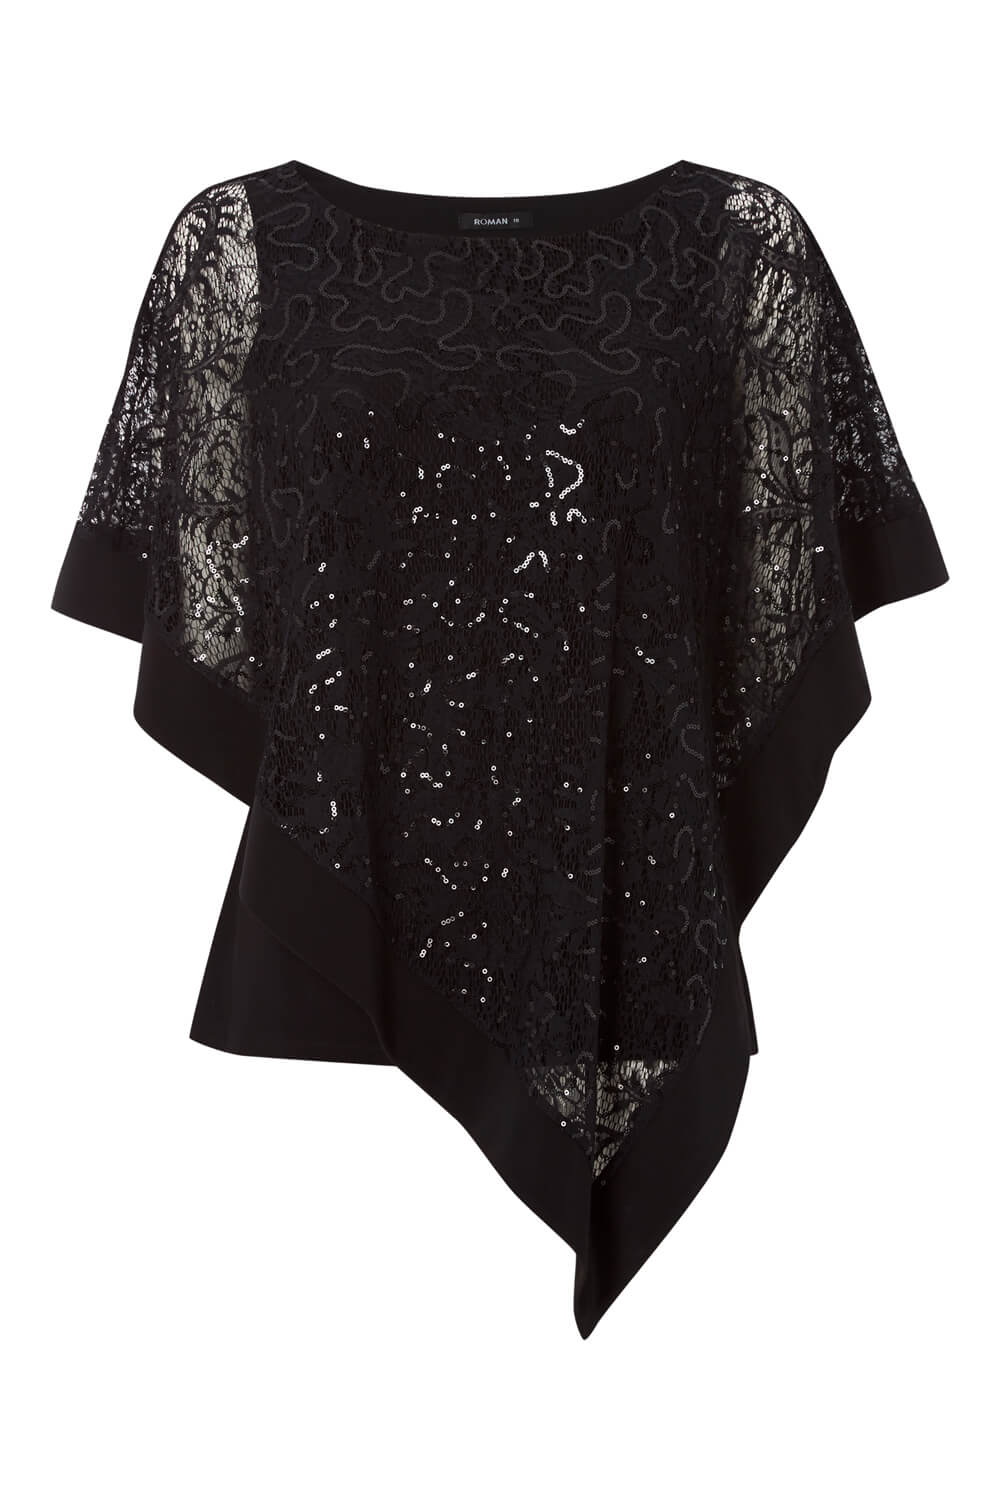 Black Sequin Embellished Overlay Top, Image 5 of 5